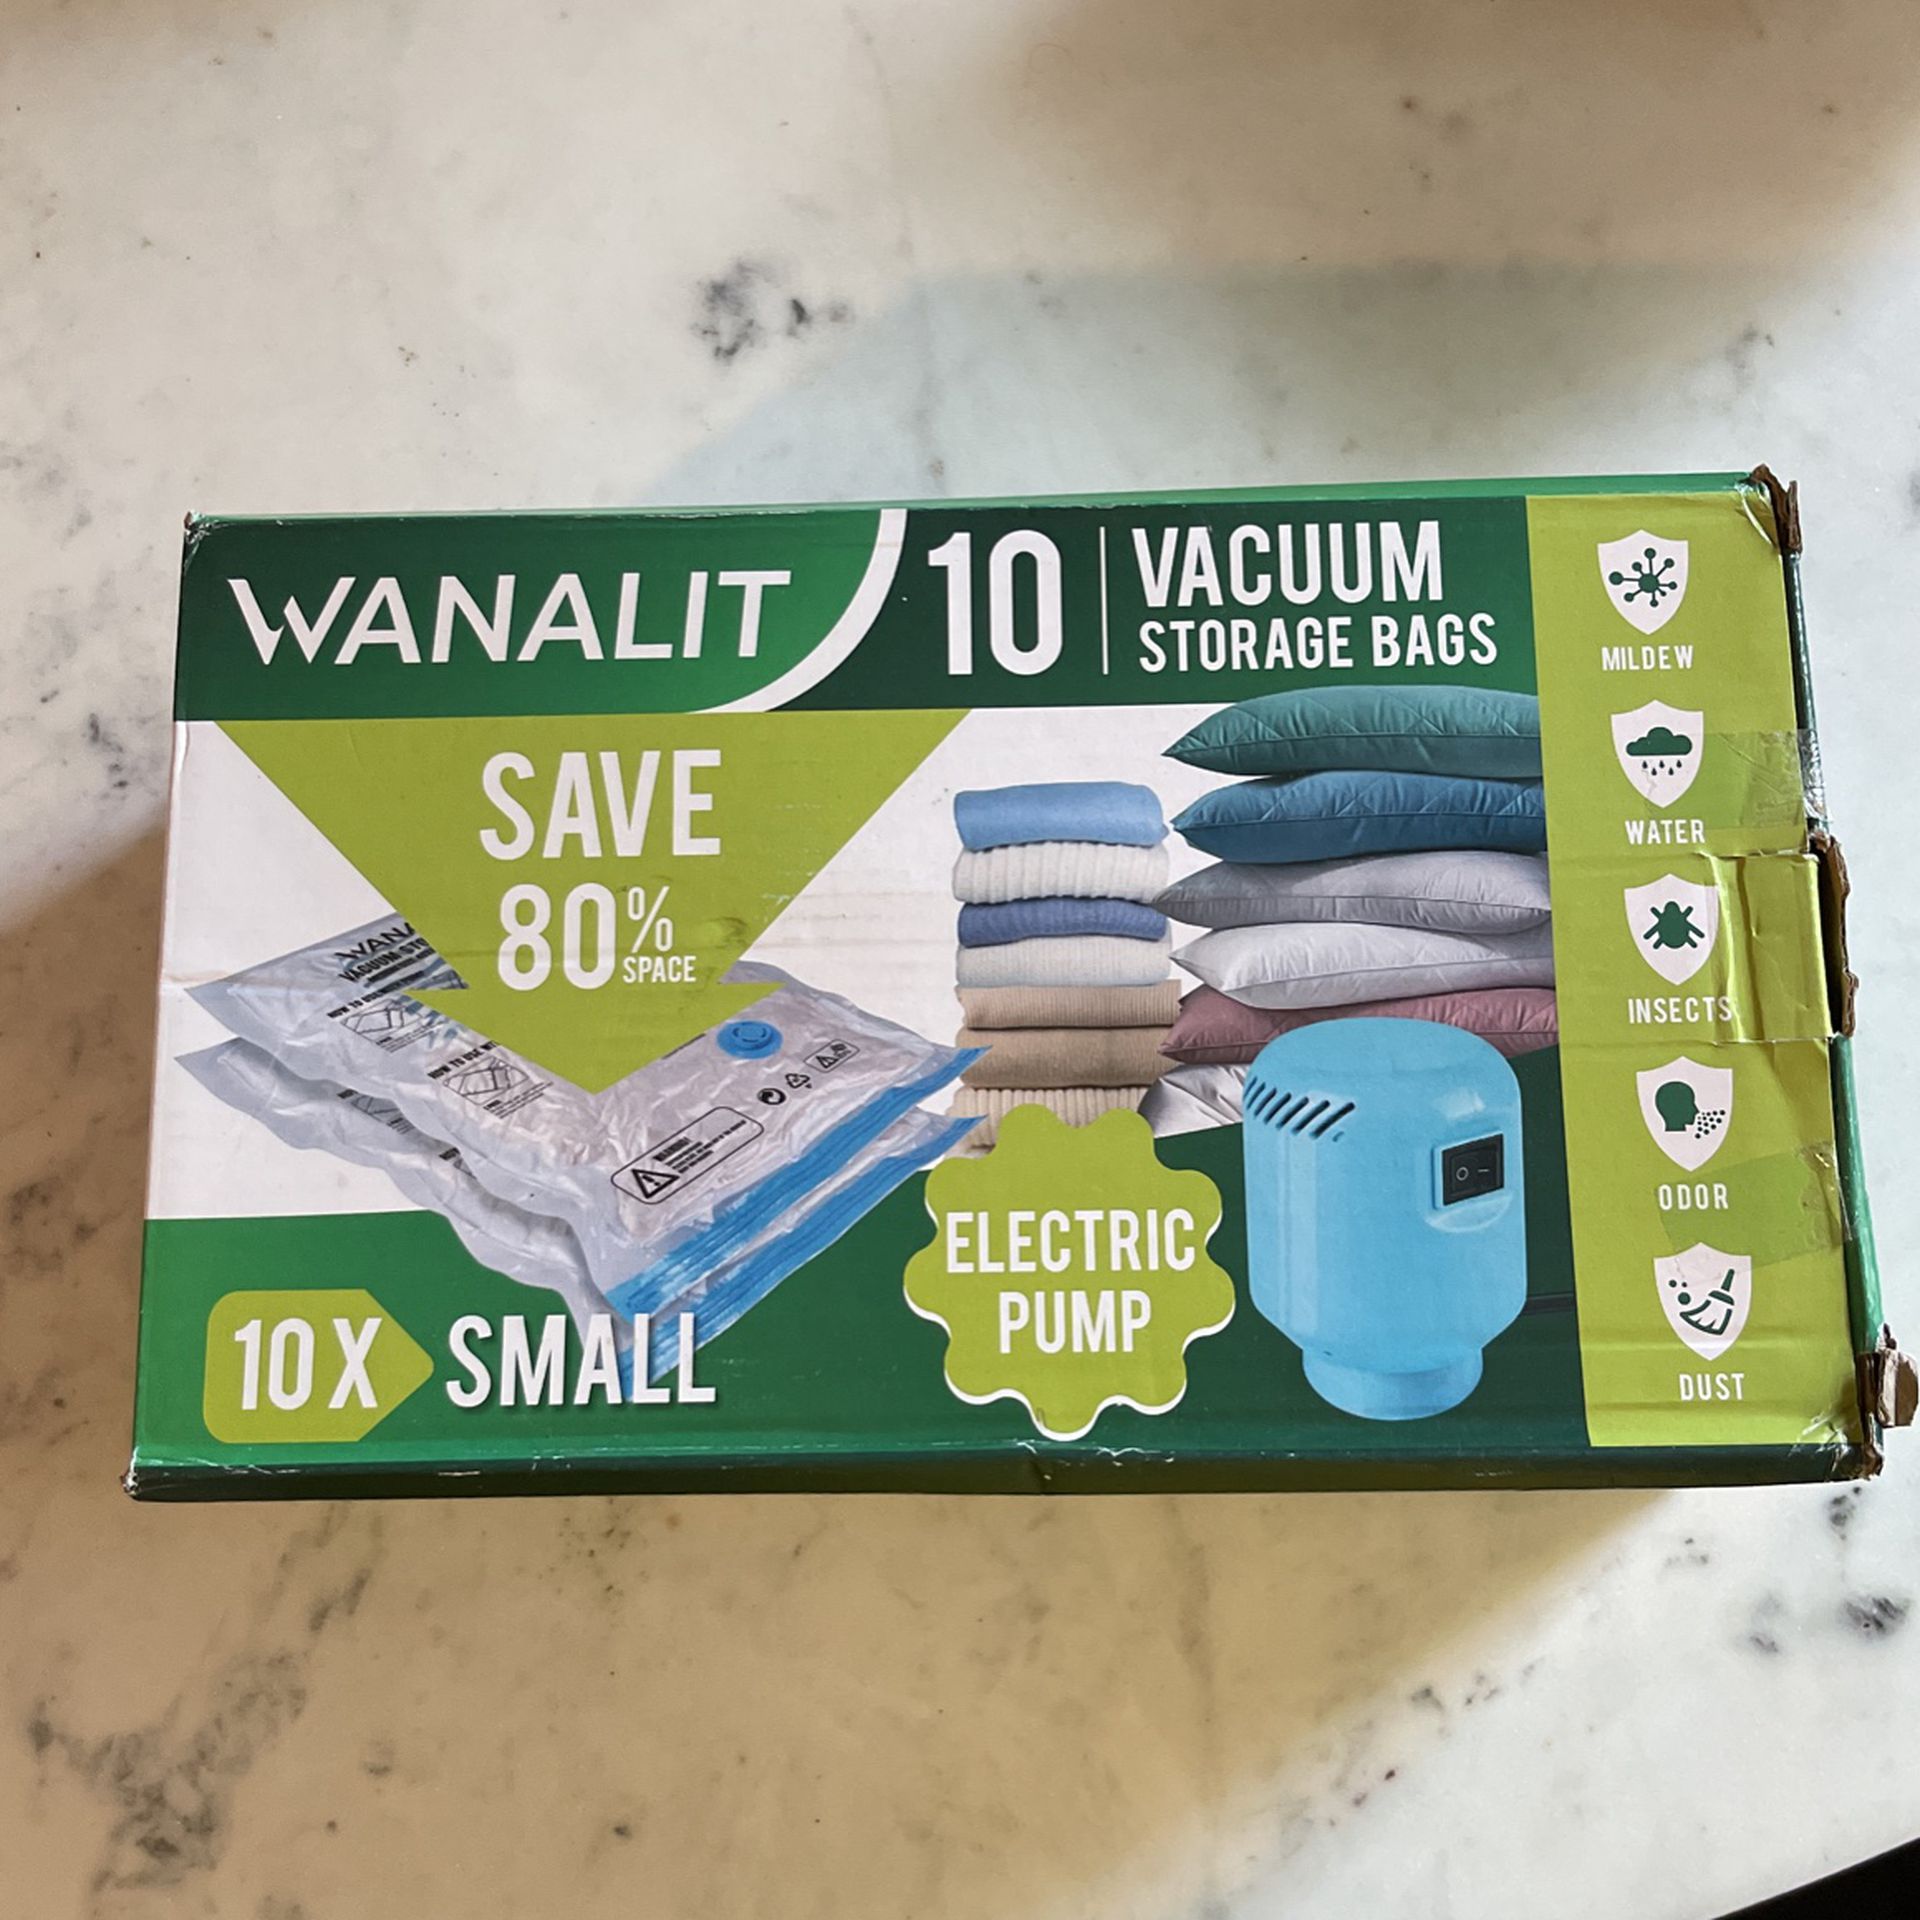 Wanalit Brand Vacuum Storage Bags